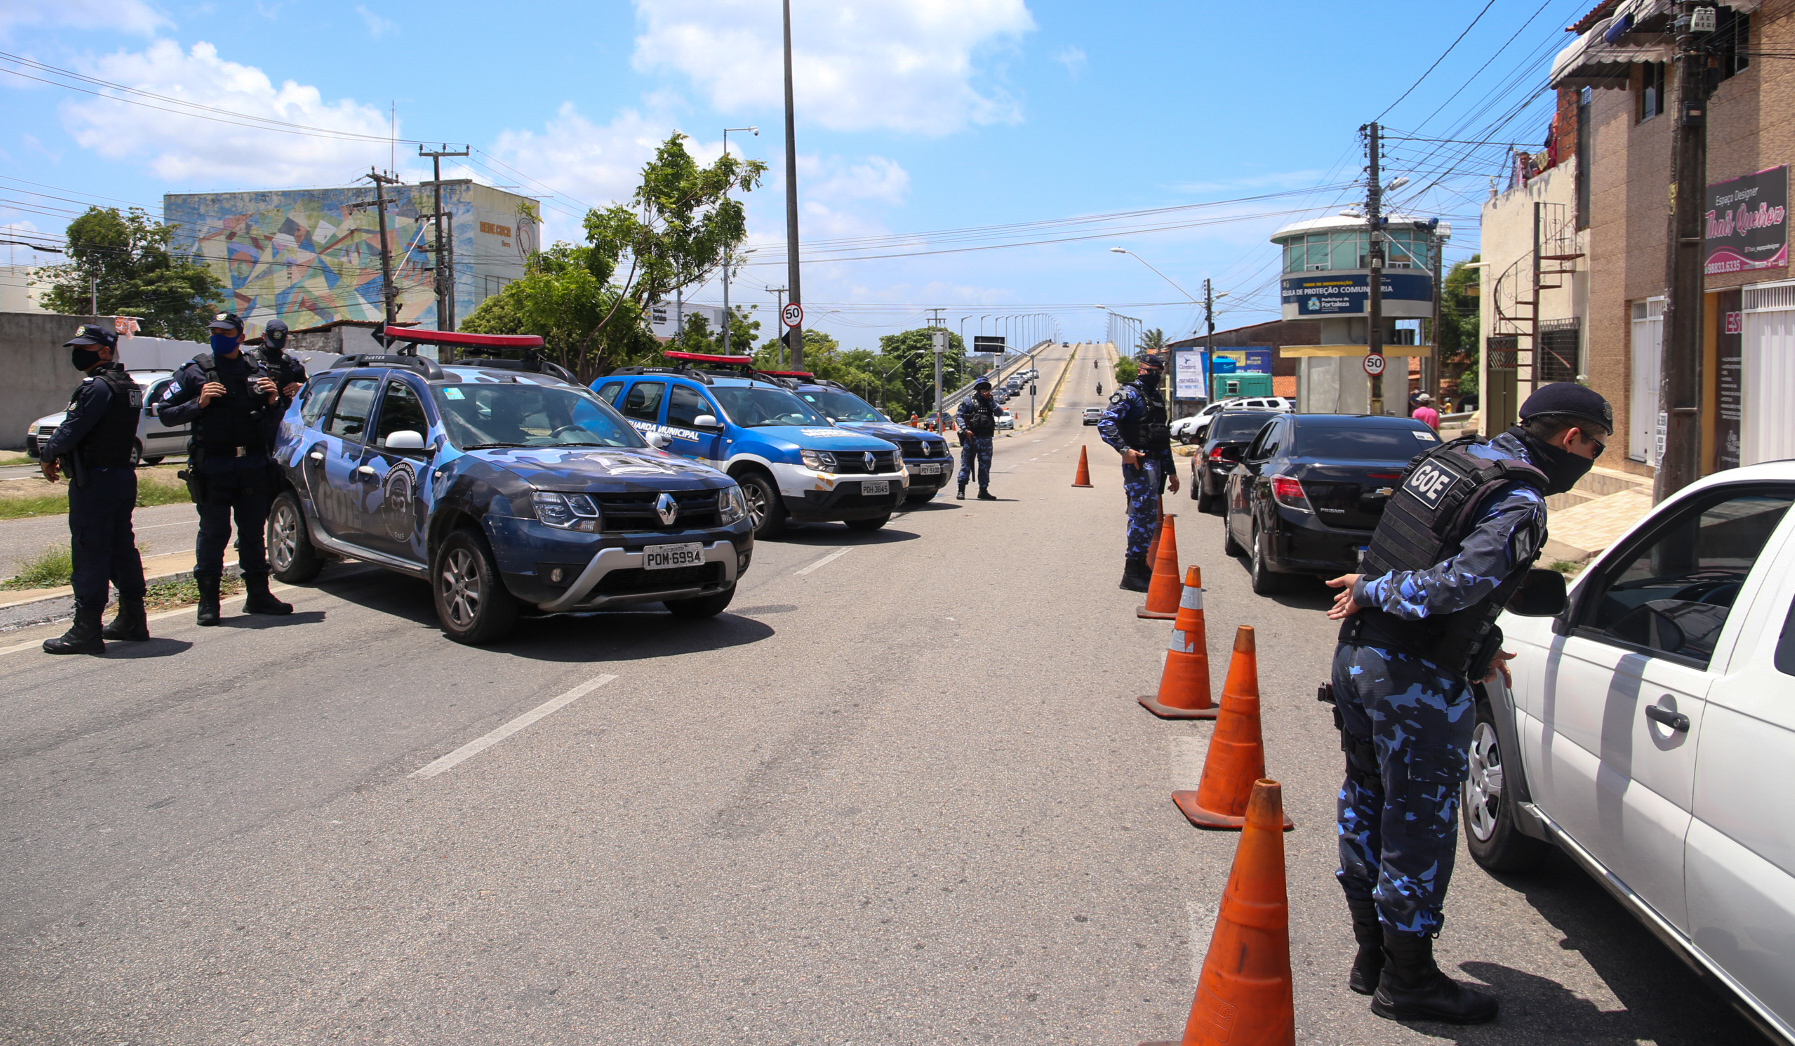 DEIC prende guarda municipal com arsenal em carro - Jornal Diário